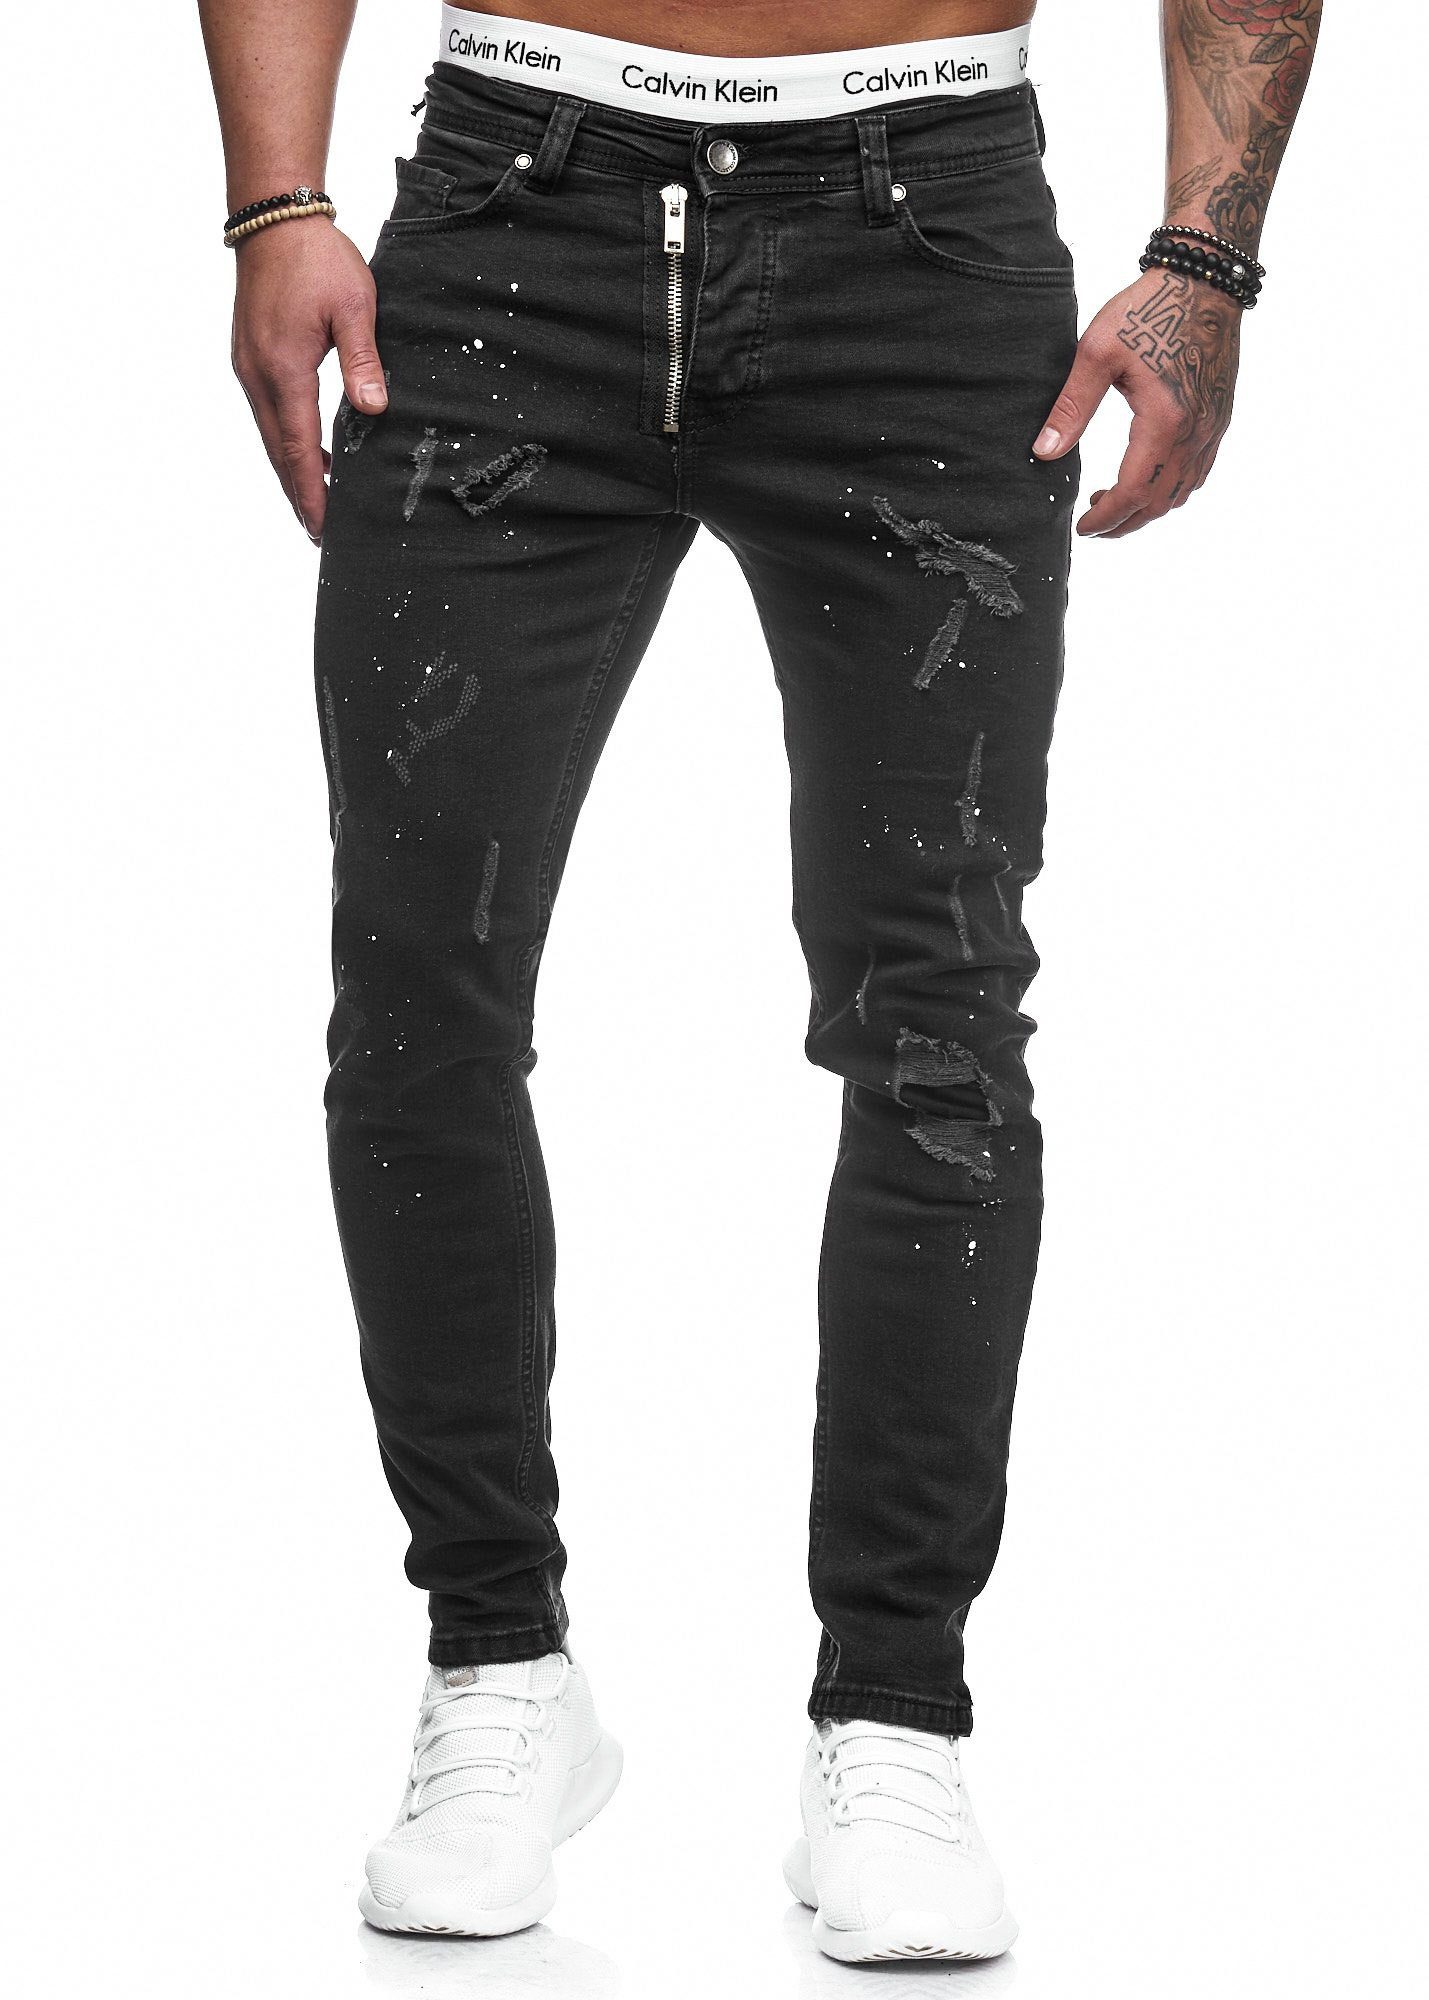 Code47 Slim-fit-Jeans Herren Designer Chino Jeans Hose Basic Stretch Jeanshose Slim Fit Schwarz Risse 5073